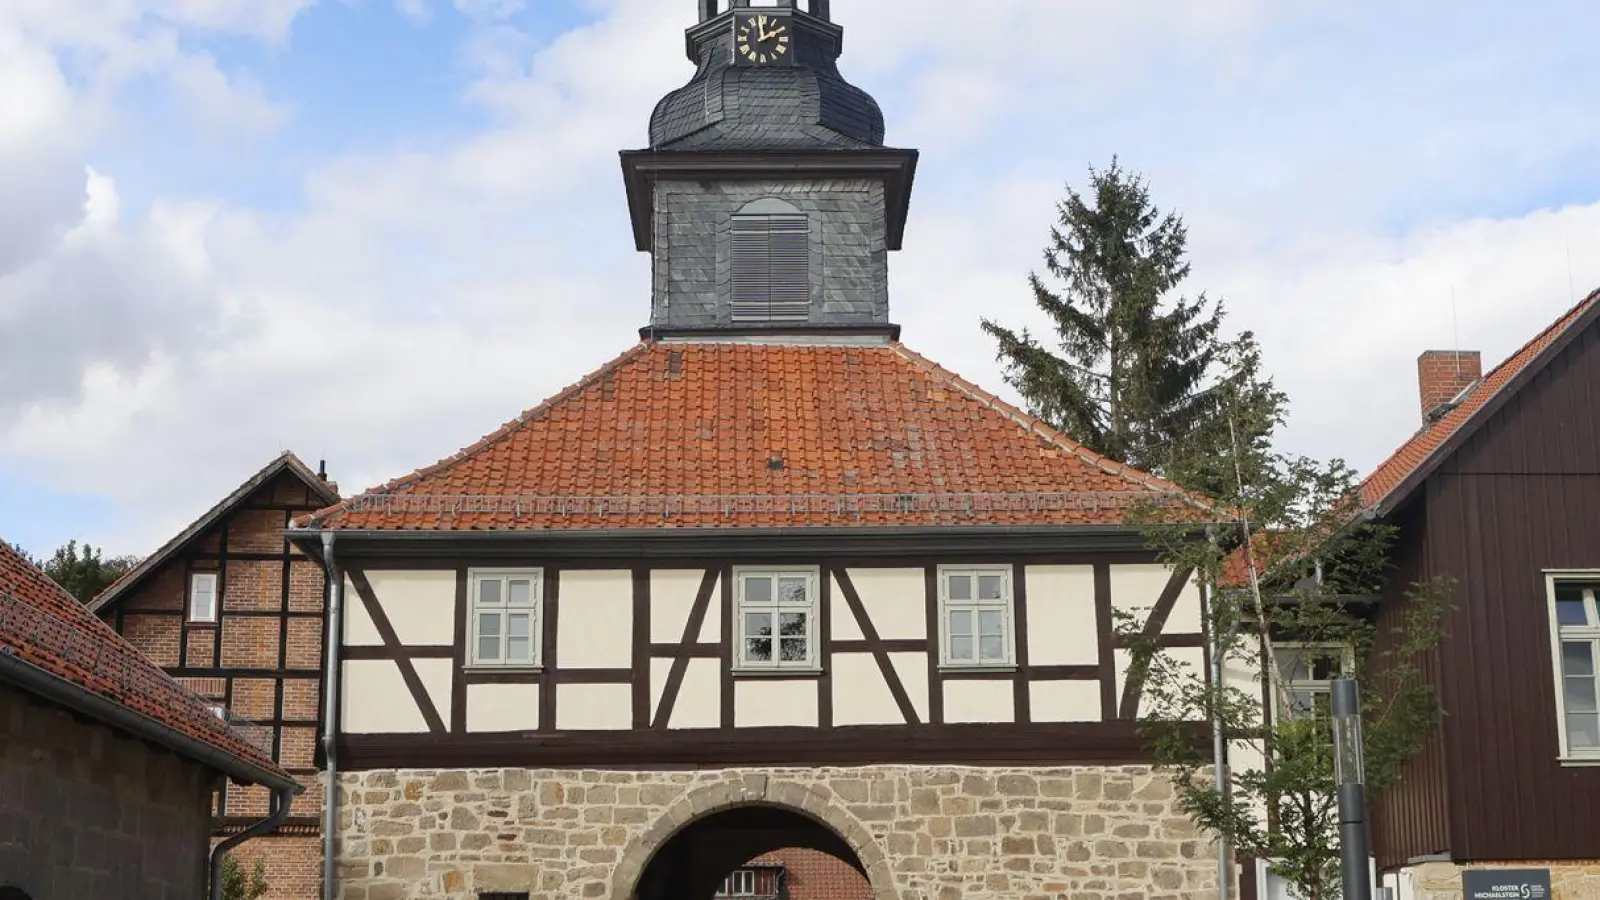 Blick auf das Torhaus im Kloster Michaelstein. Das beliebte Ausflugsziel ist eine ehemalige Zisterzienser-Abtei. (Foto: Matthias Bein/dpa)